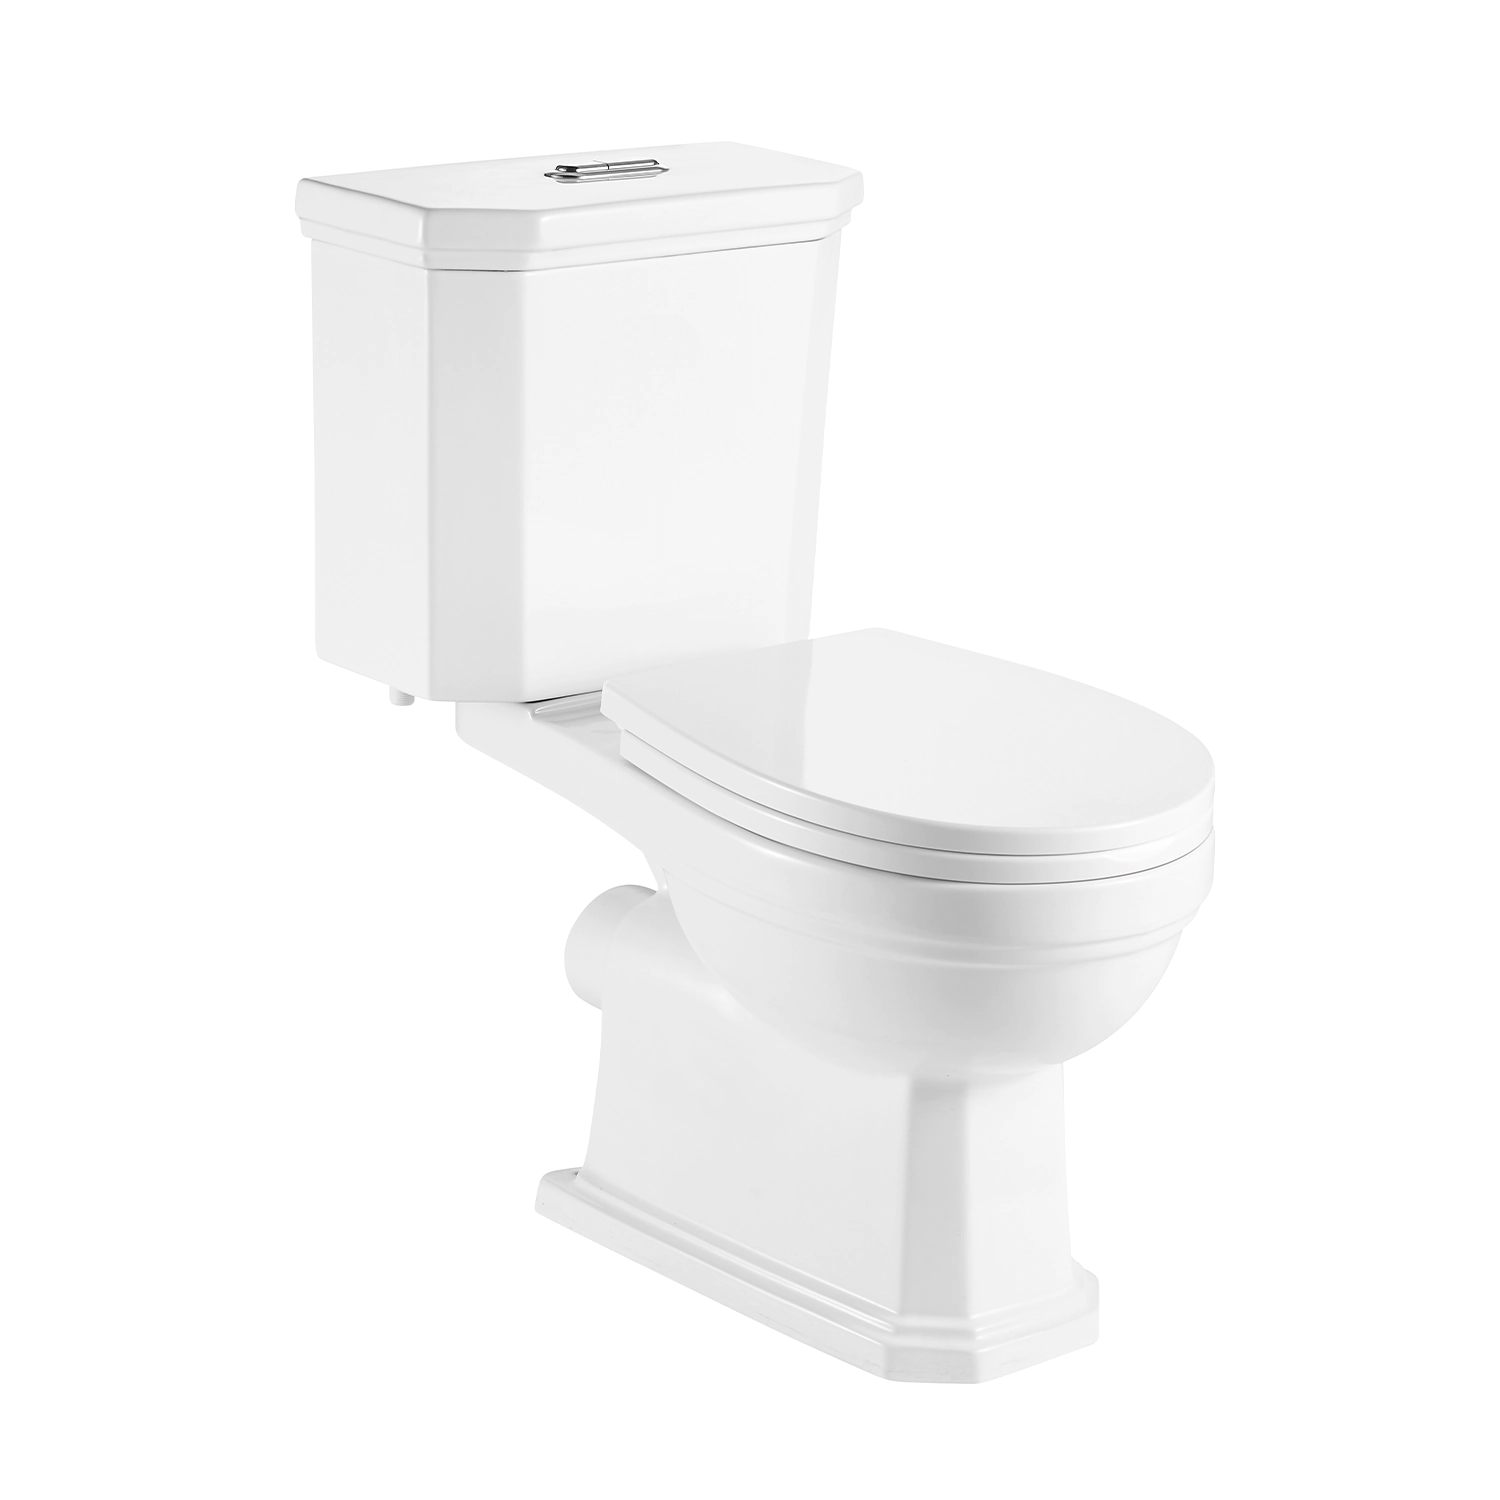 Retro design two piece ceramic toilet floor standing P-trap 180